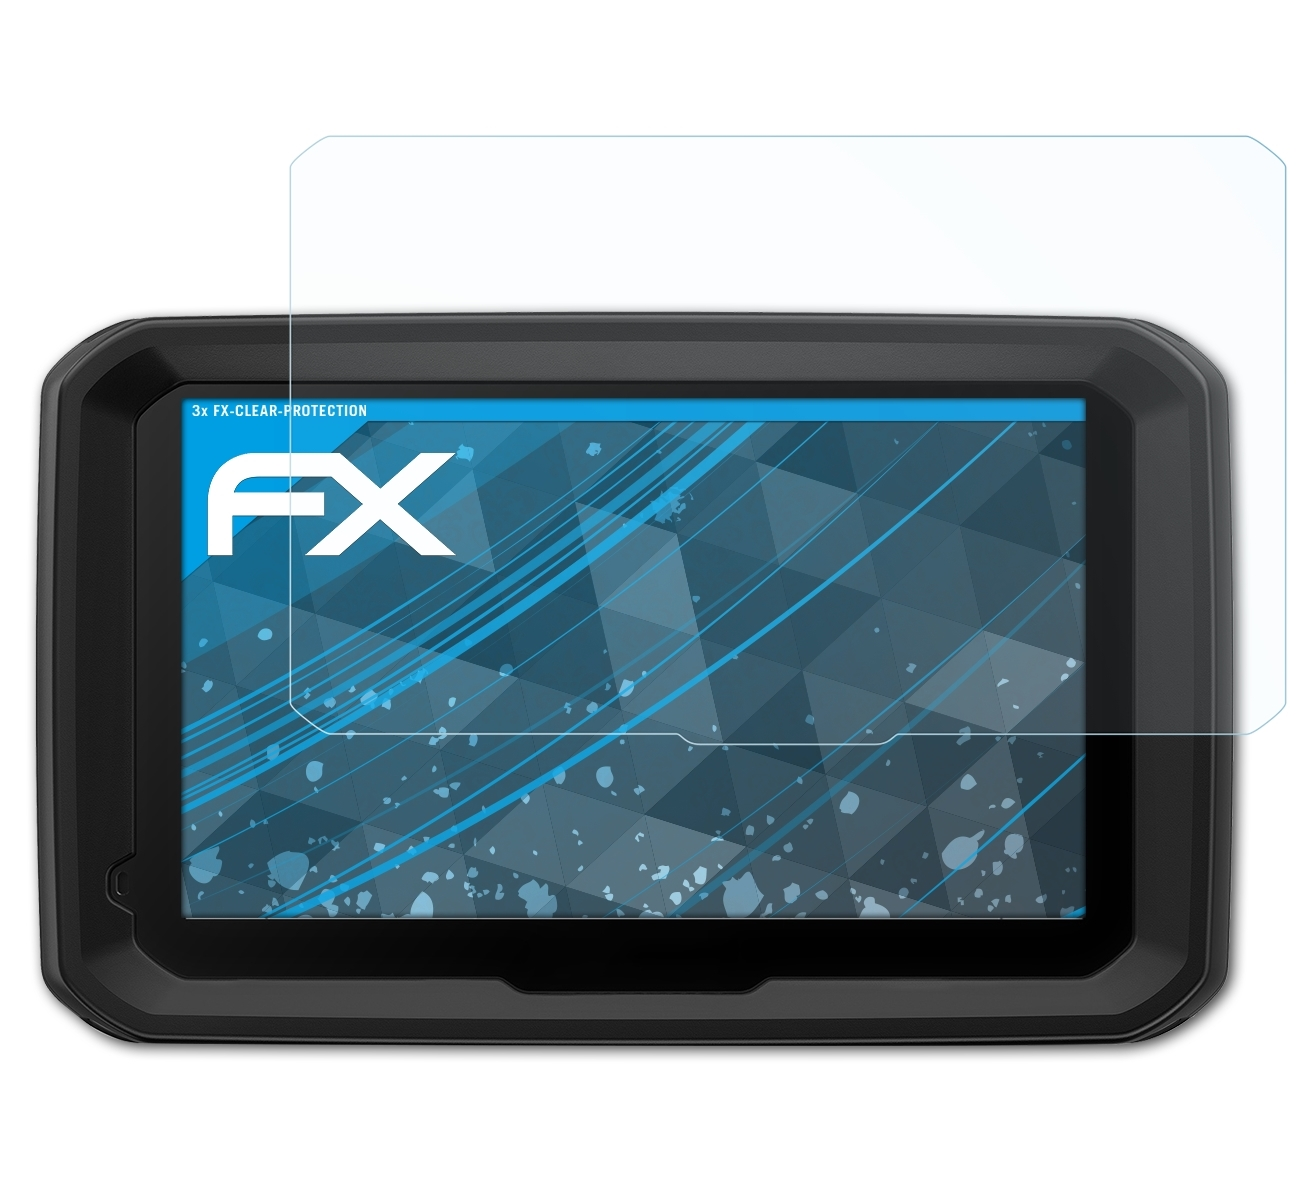 3x Garmin Displayschutz(für ATFOLIX dezl 580 FX-Clear LMT-D)